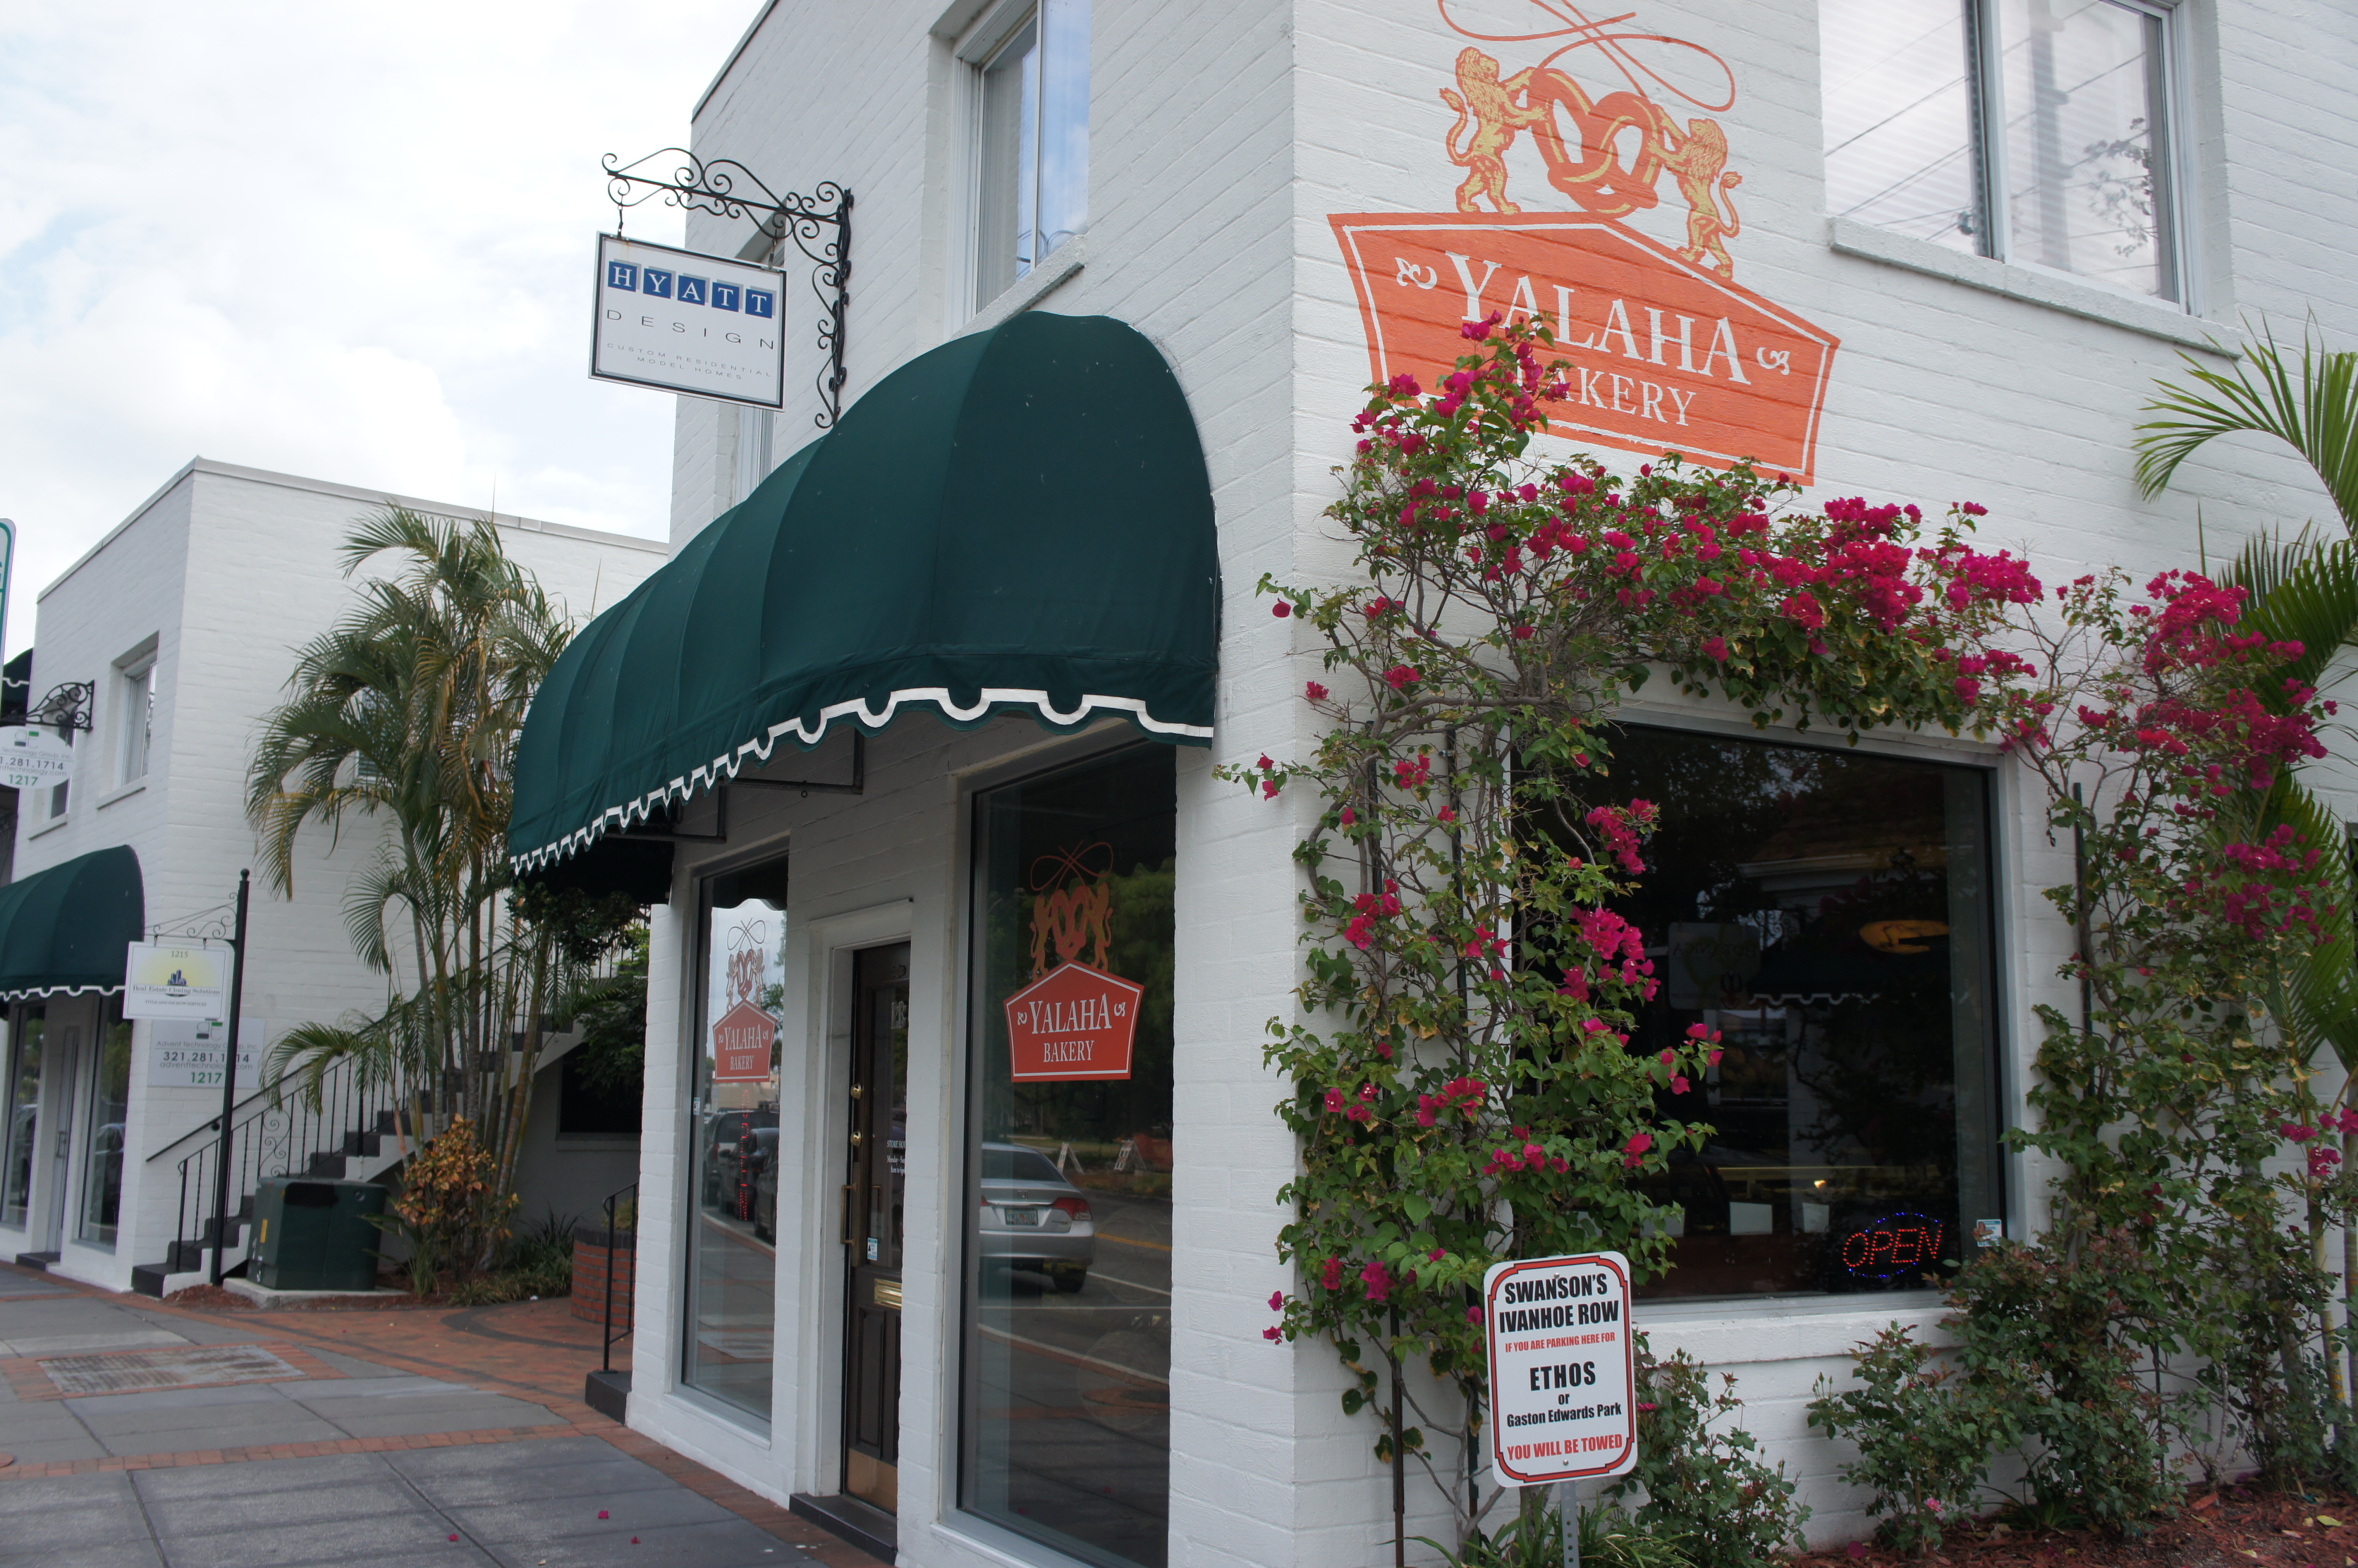 Yalaha Bakery – Authentic Germany bakery in Orlando via Lake County